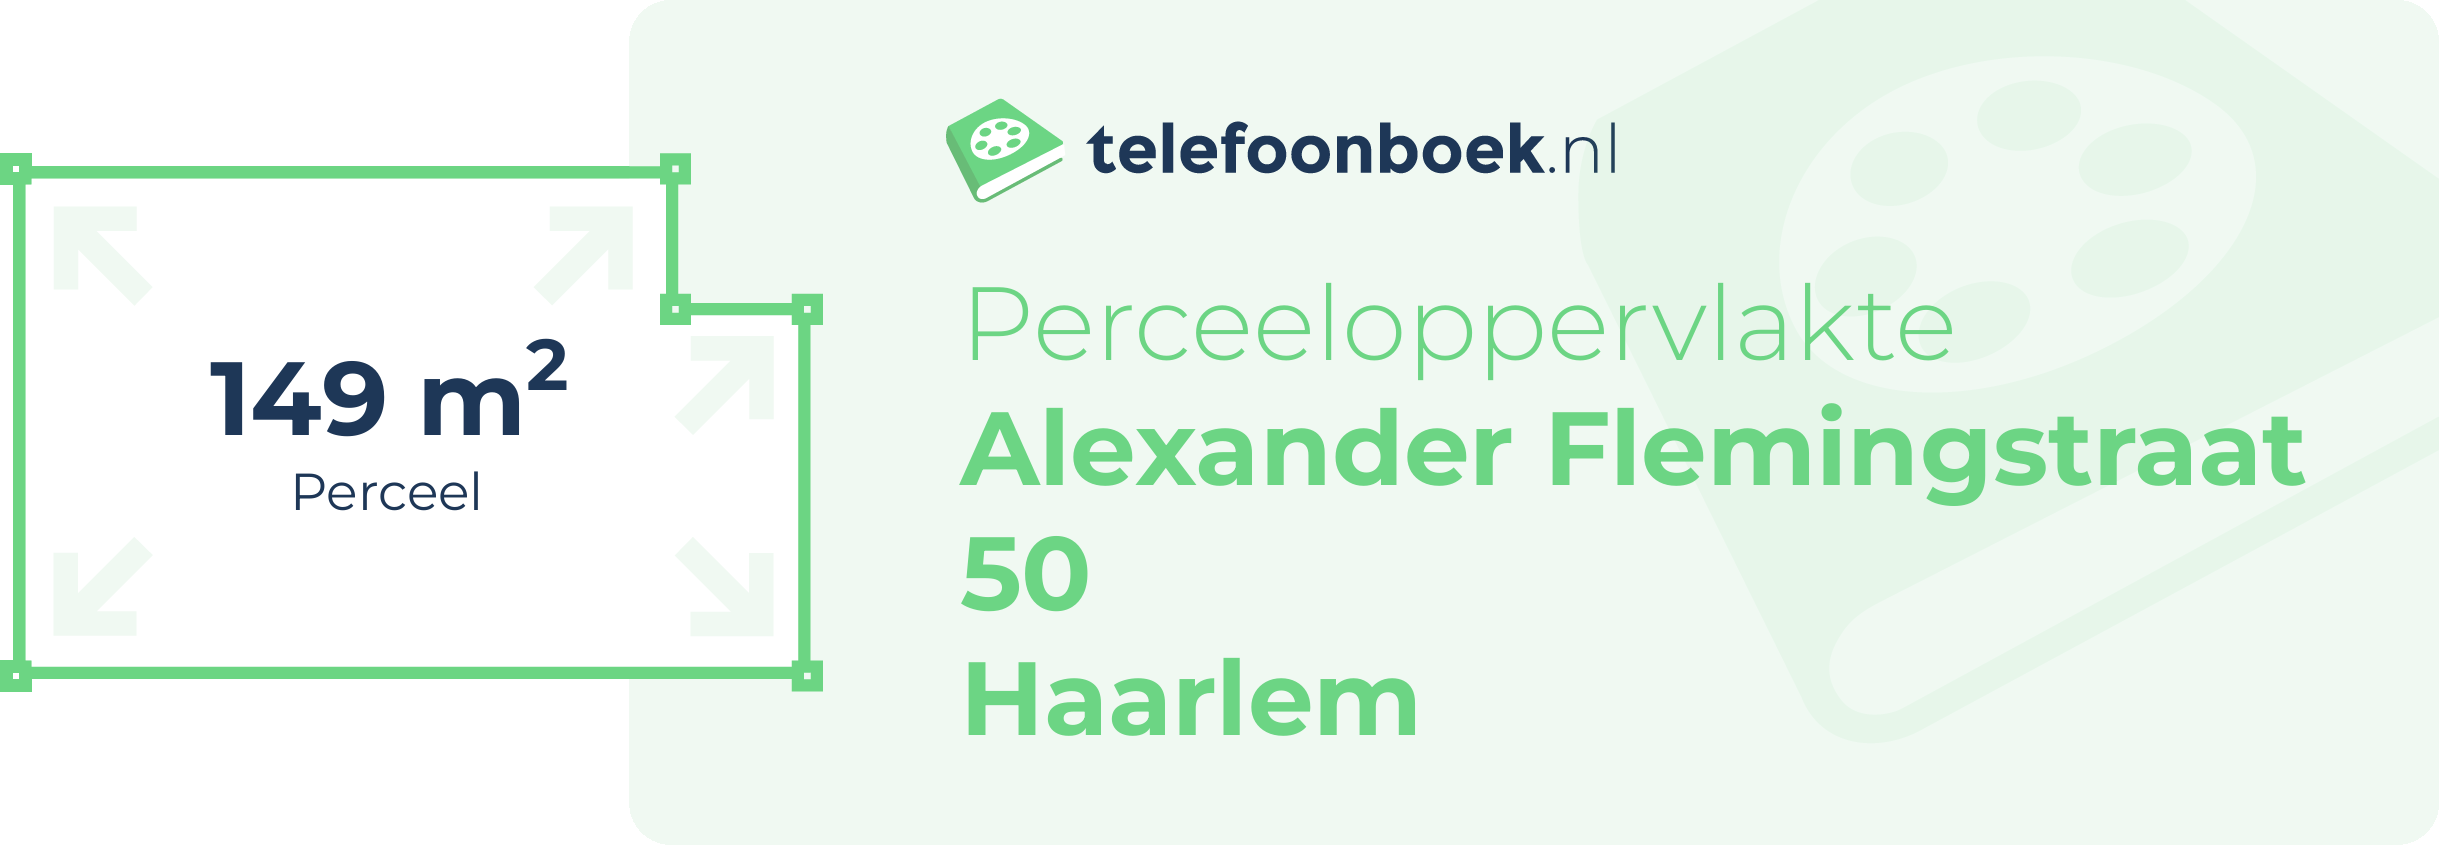 Perceeloppervlakte Alexander Flemingstraat 50 Haarlem